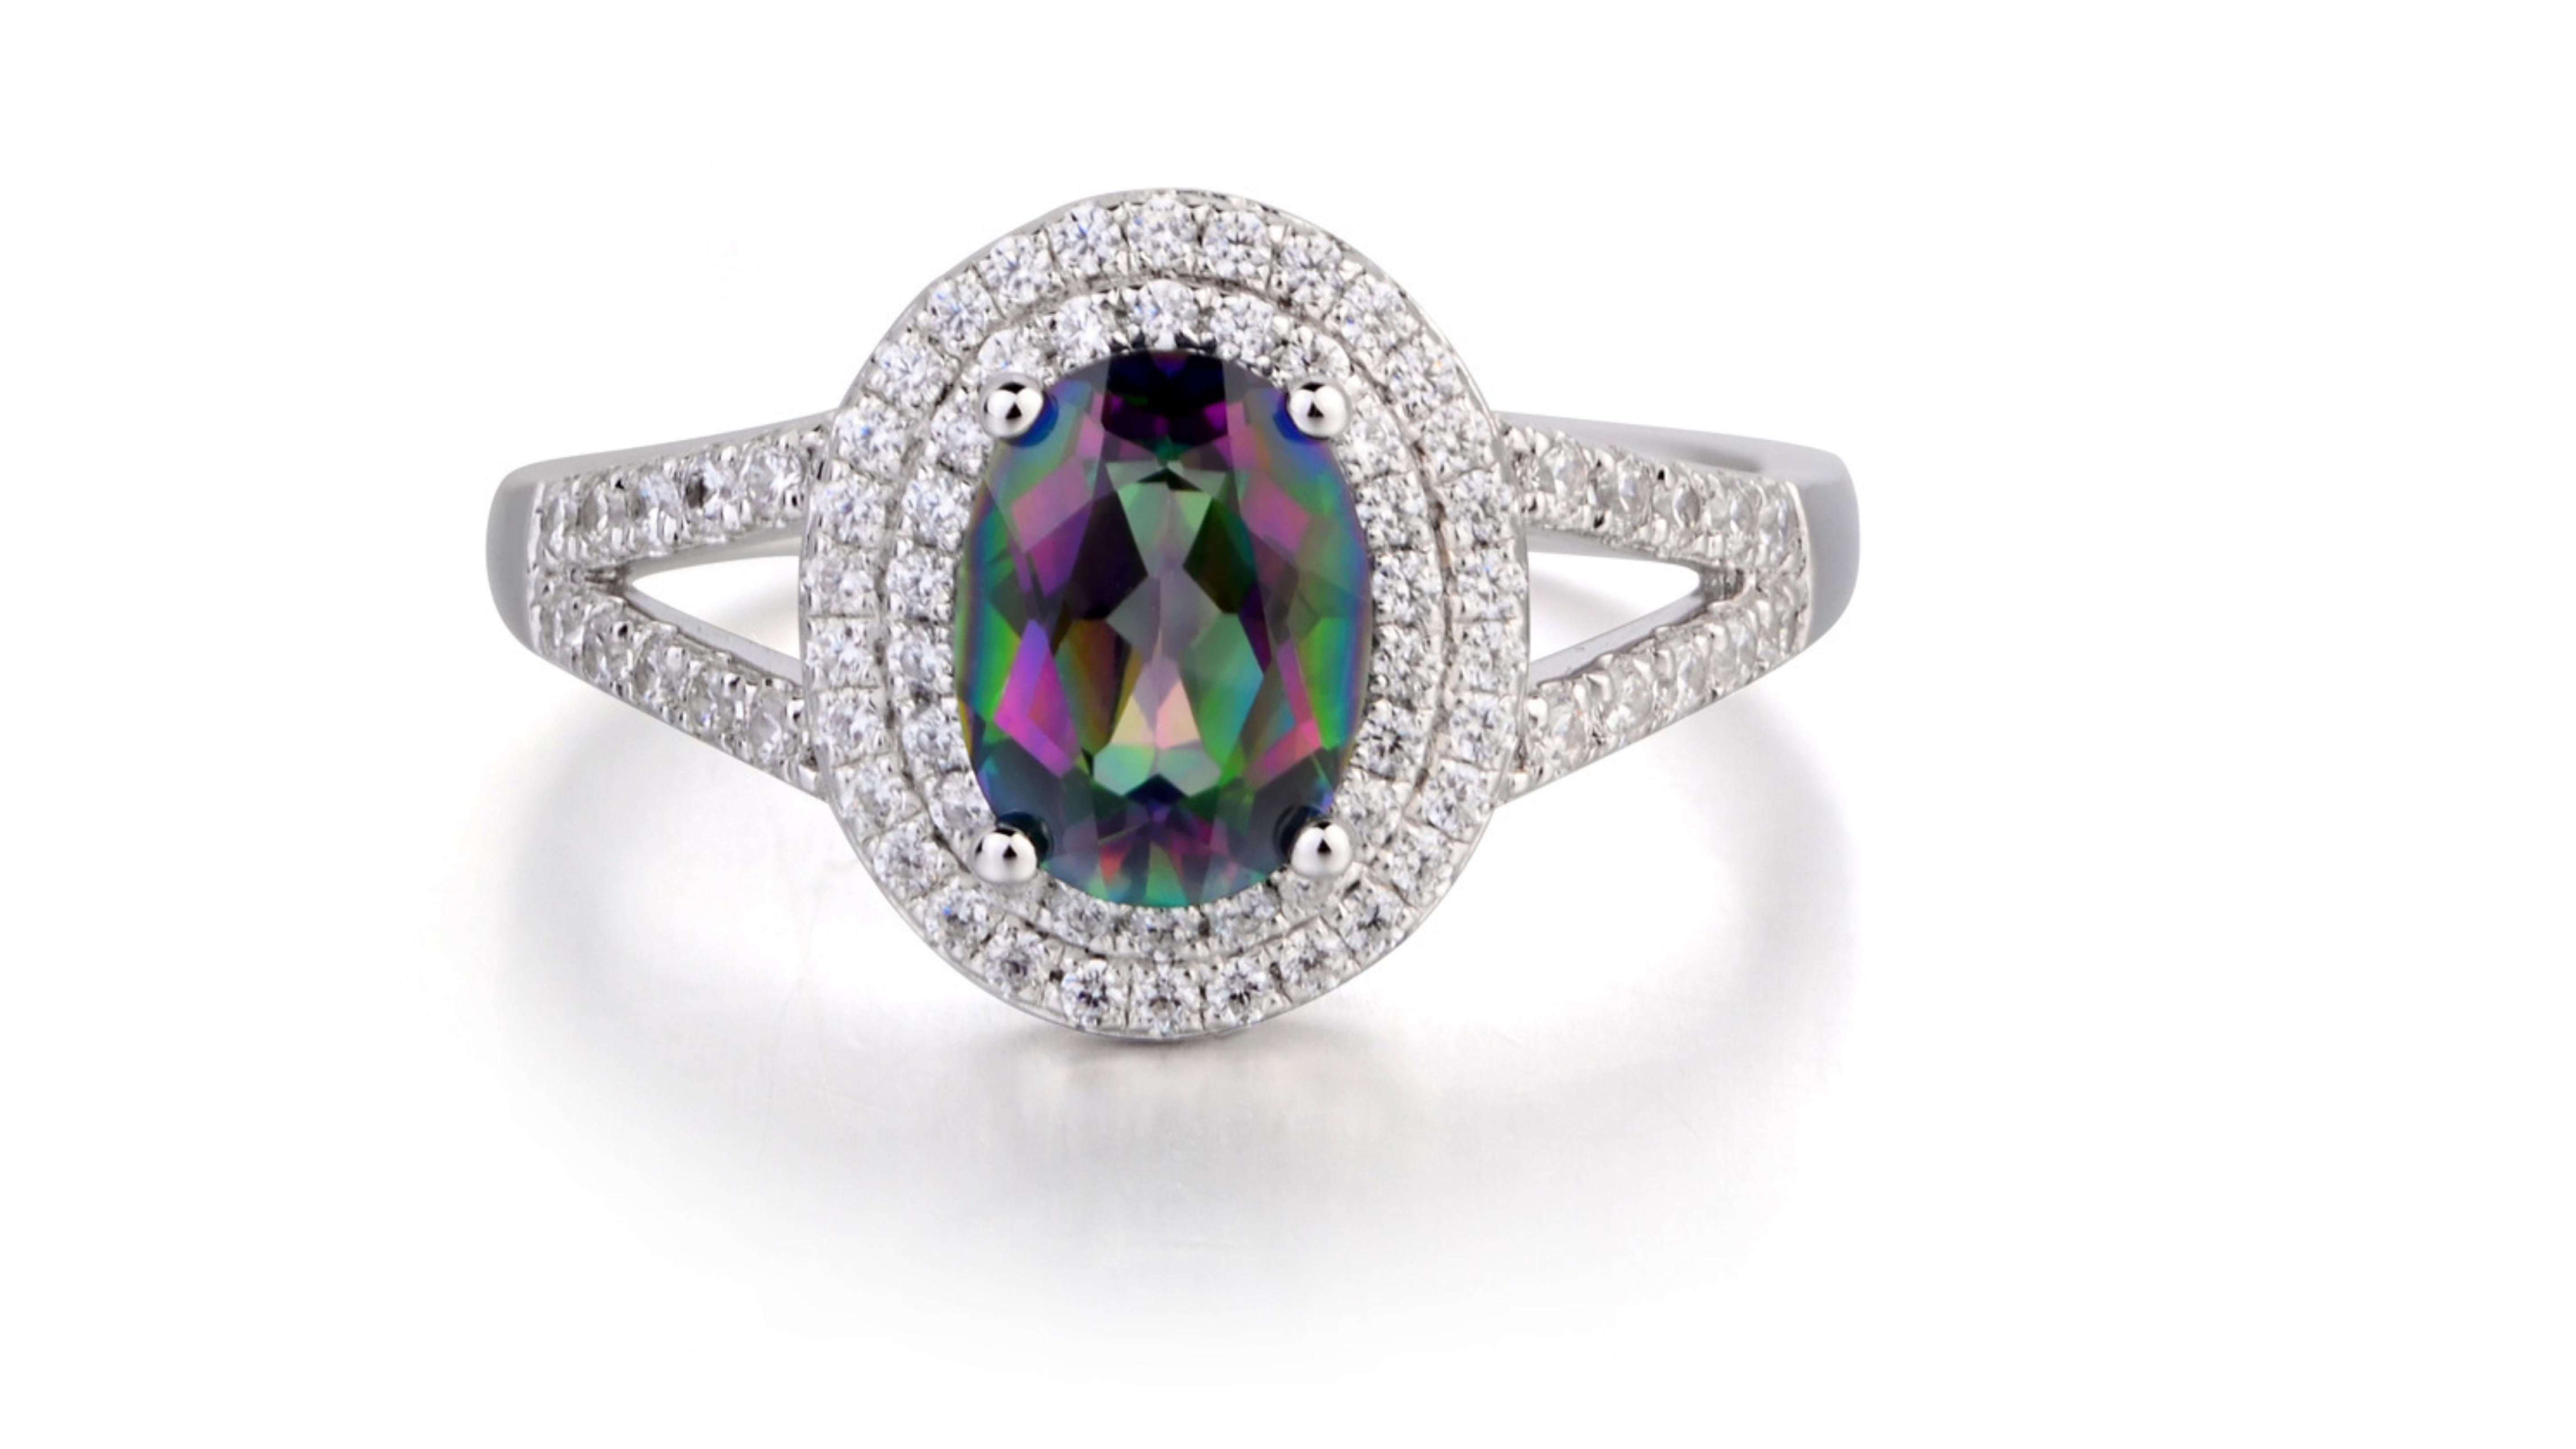 Rny Jewelry Latest Design Purple Rainbow Mystic Topaz Fashion Jewelry For Women Wedding Rings